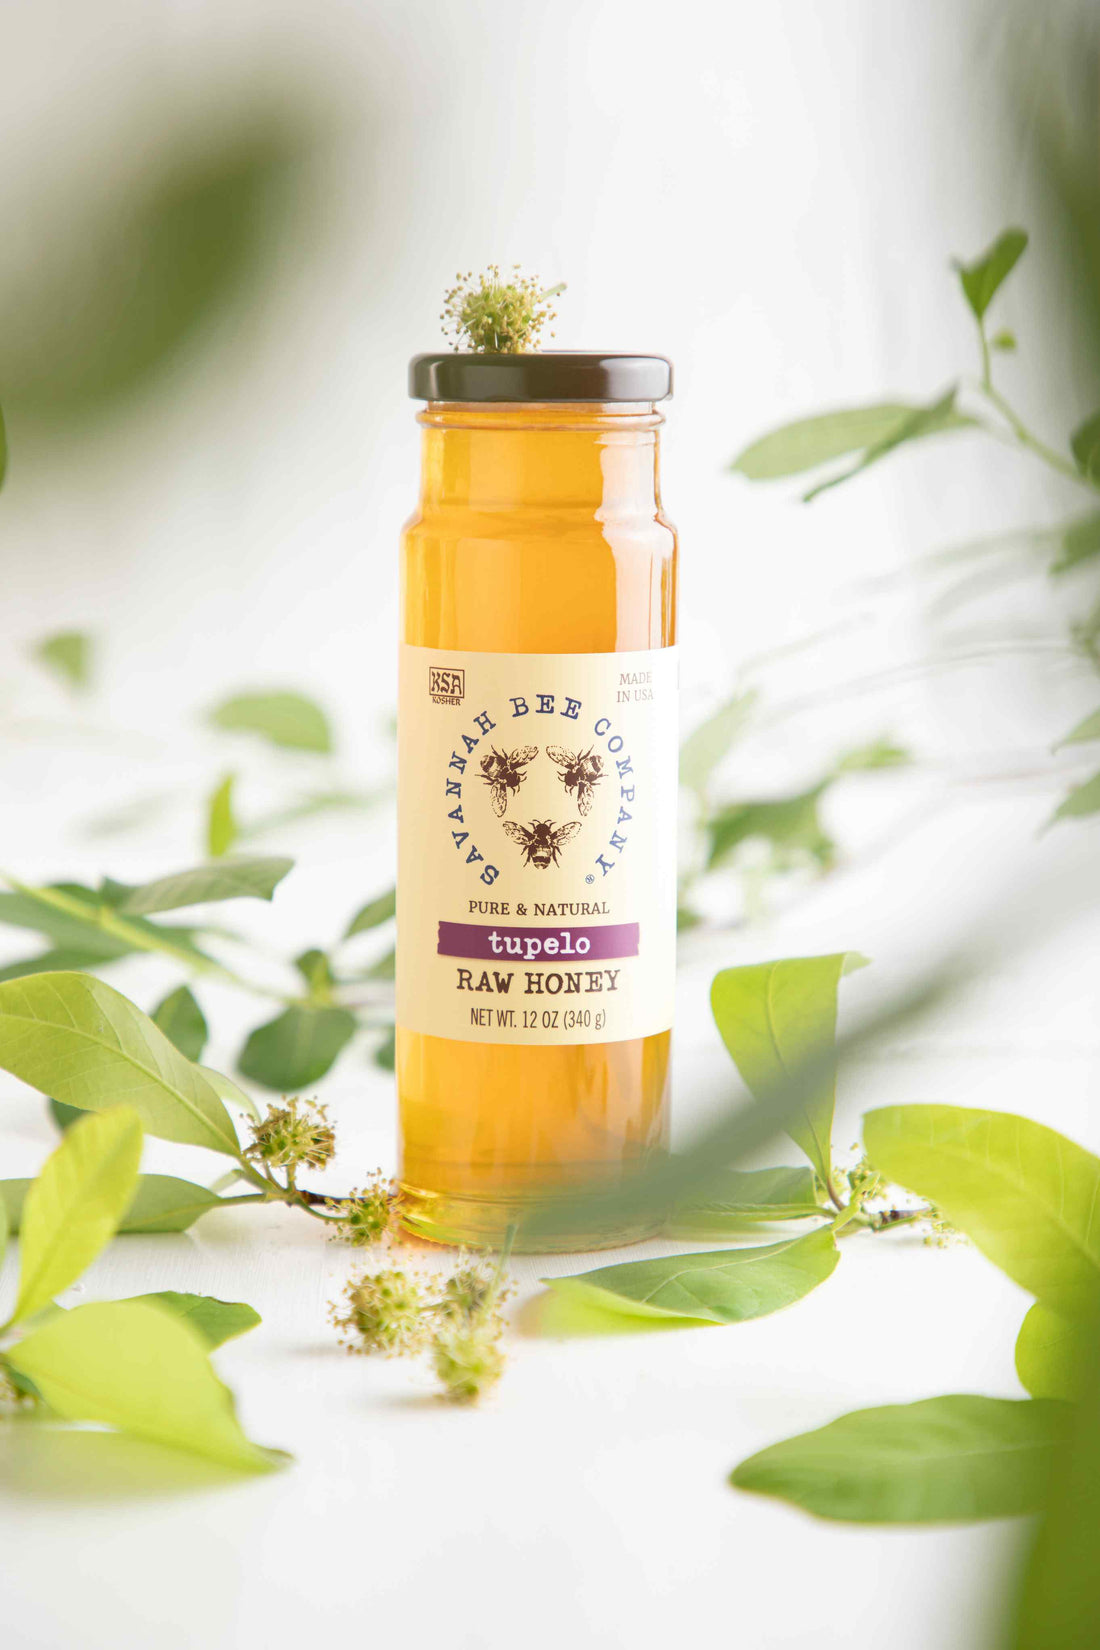 Tupelo Honey: The Sweet and Healthy Alternative to Regular Honey